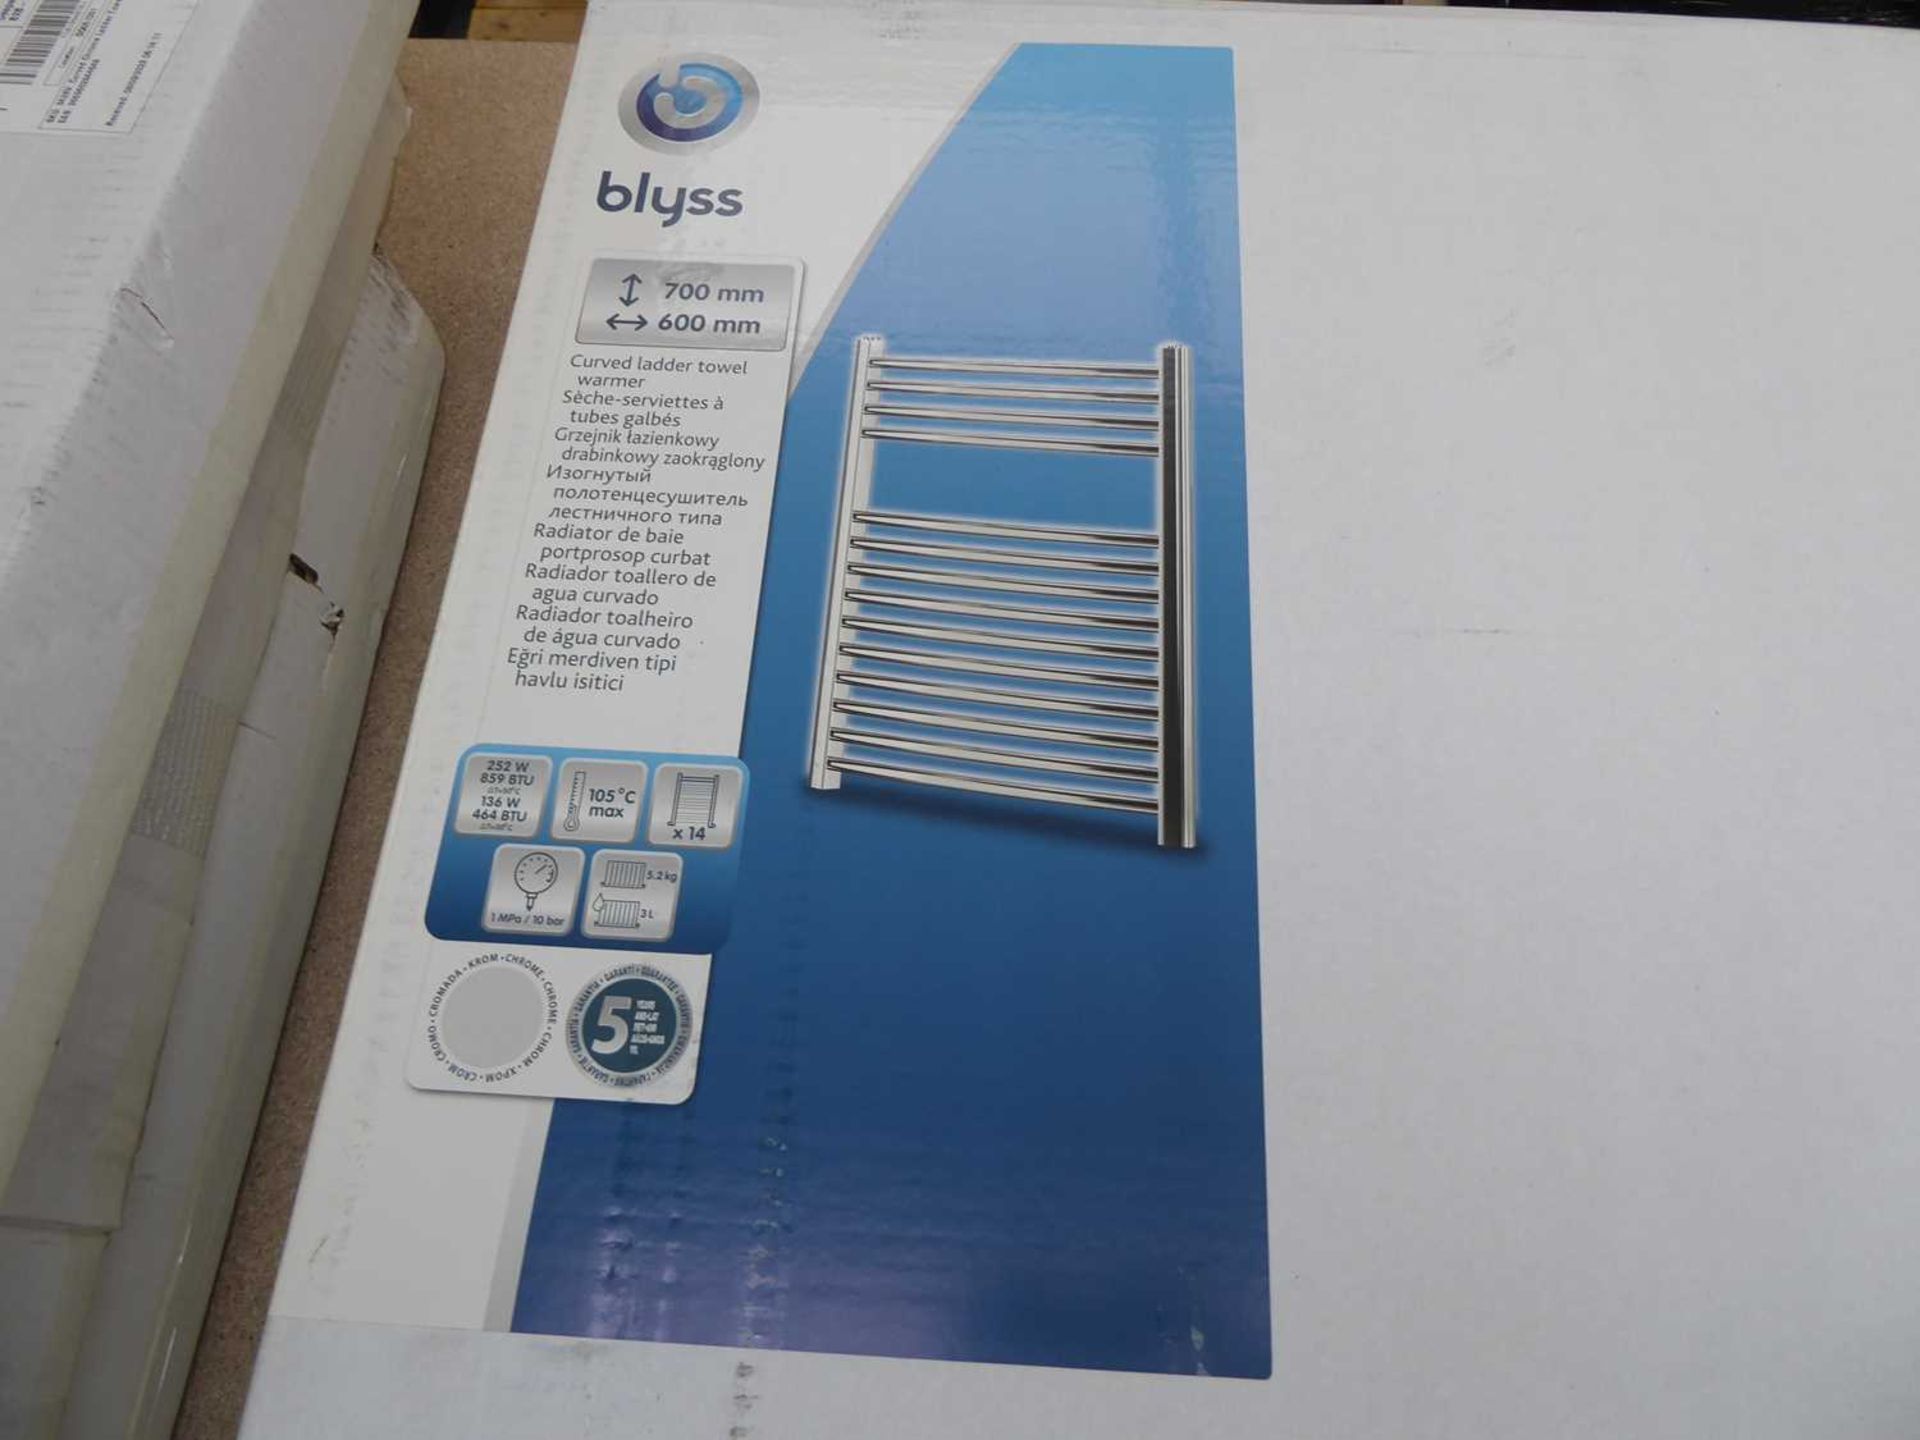 +VAT Blyss 700x600mm curved ladder towel warmer - Image 2 of 2